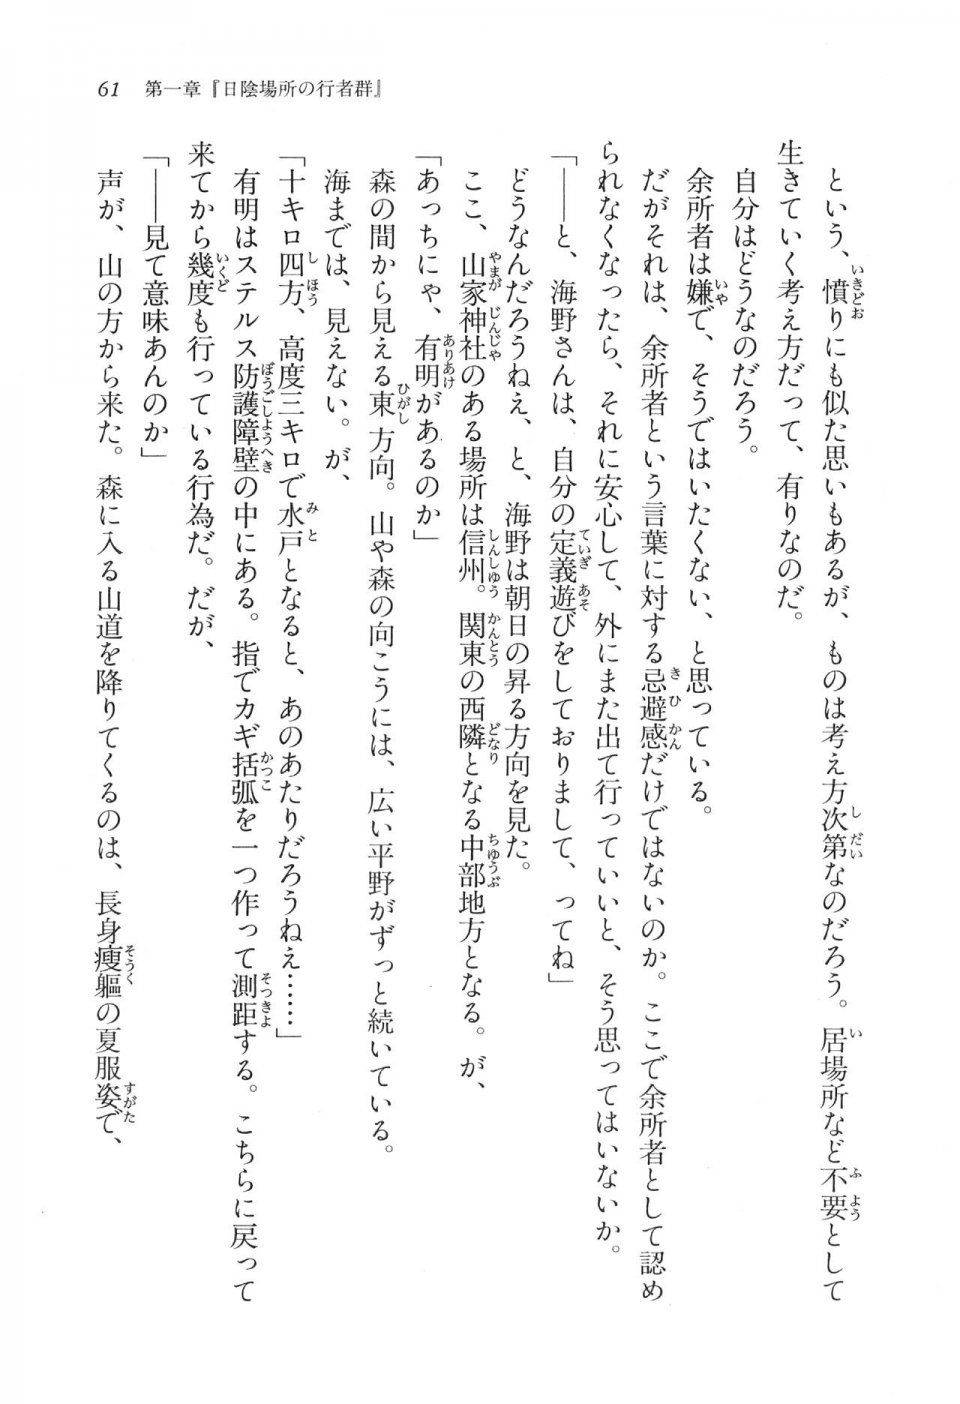 Kyoukai Senjou no Horizon LN Vol 11(5A) - Photo #61